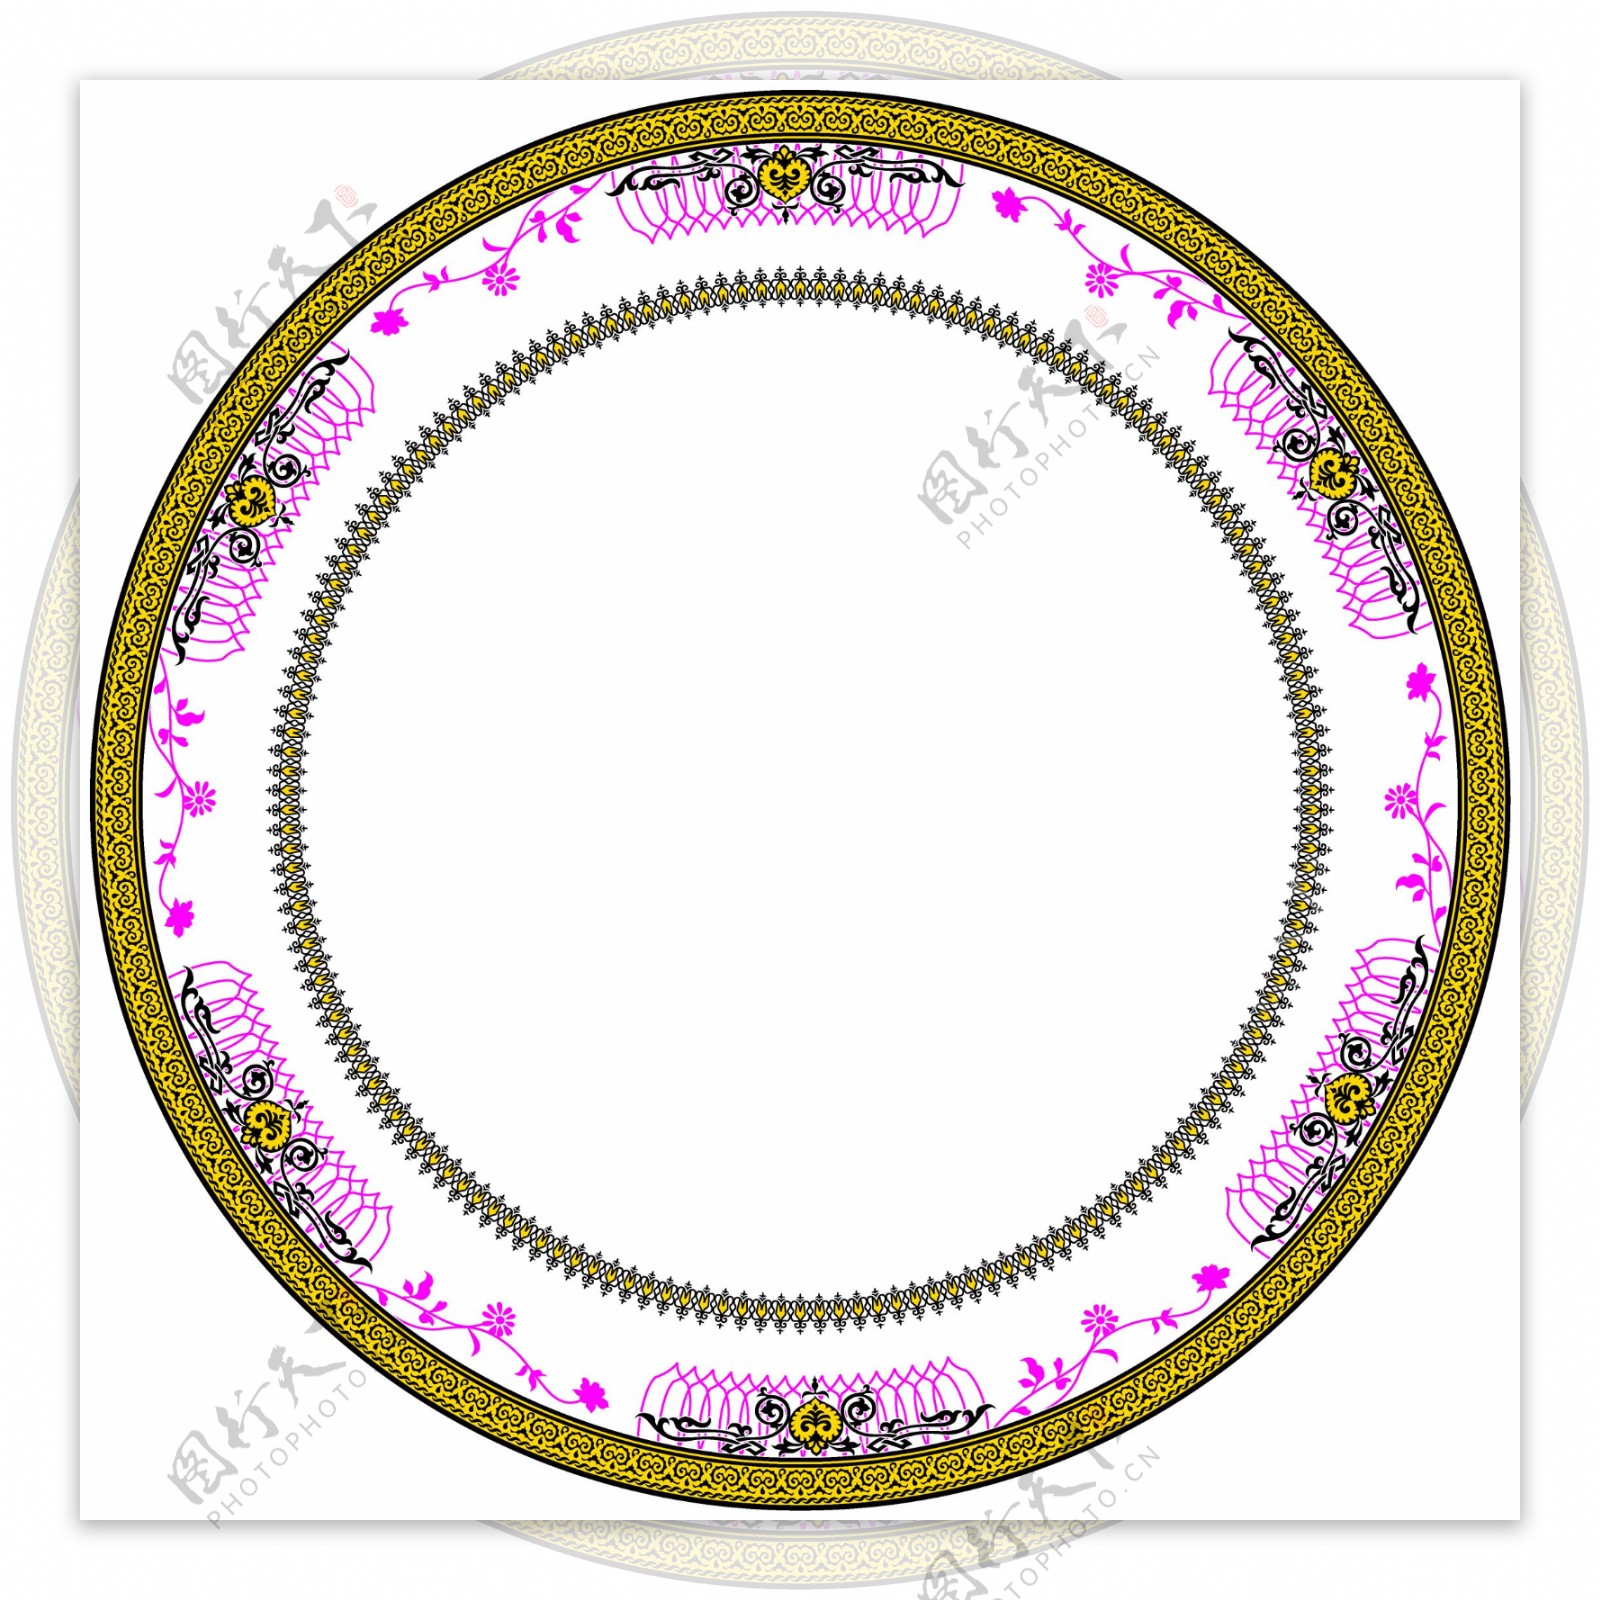 法式复古波浪花边浮雕镂空陶瓷盘餐具家用盘子水果碟子甜品蛋糕盘-阿里巴巴